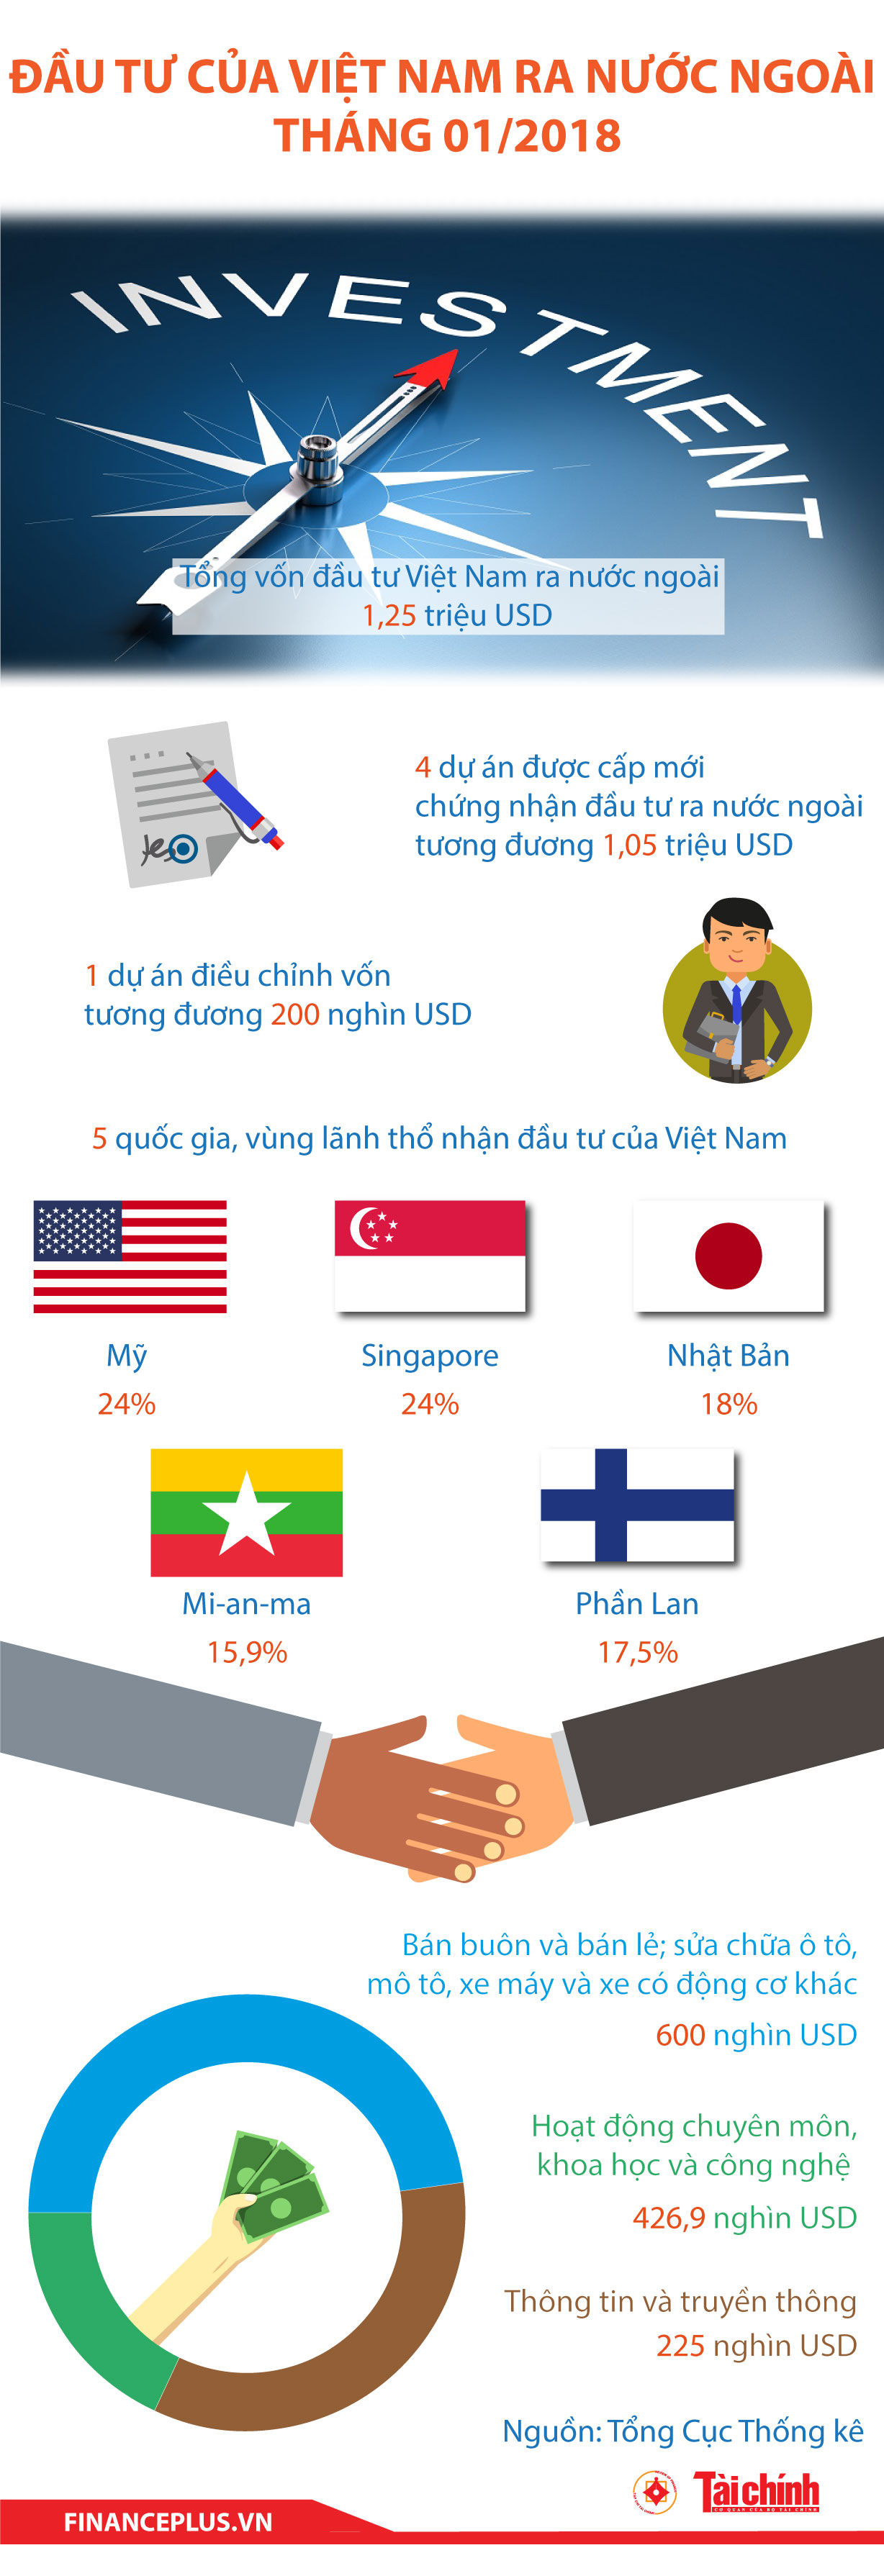 [Infographic] Đầu tư của Việt Nam ra nước ngoài tháng 01/2018 - Ảnh 1